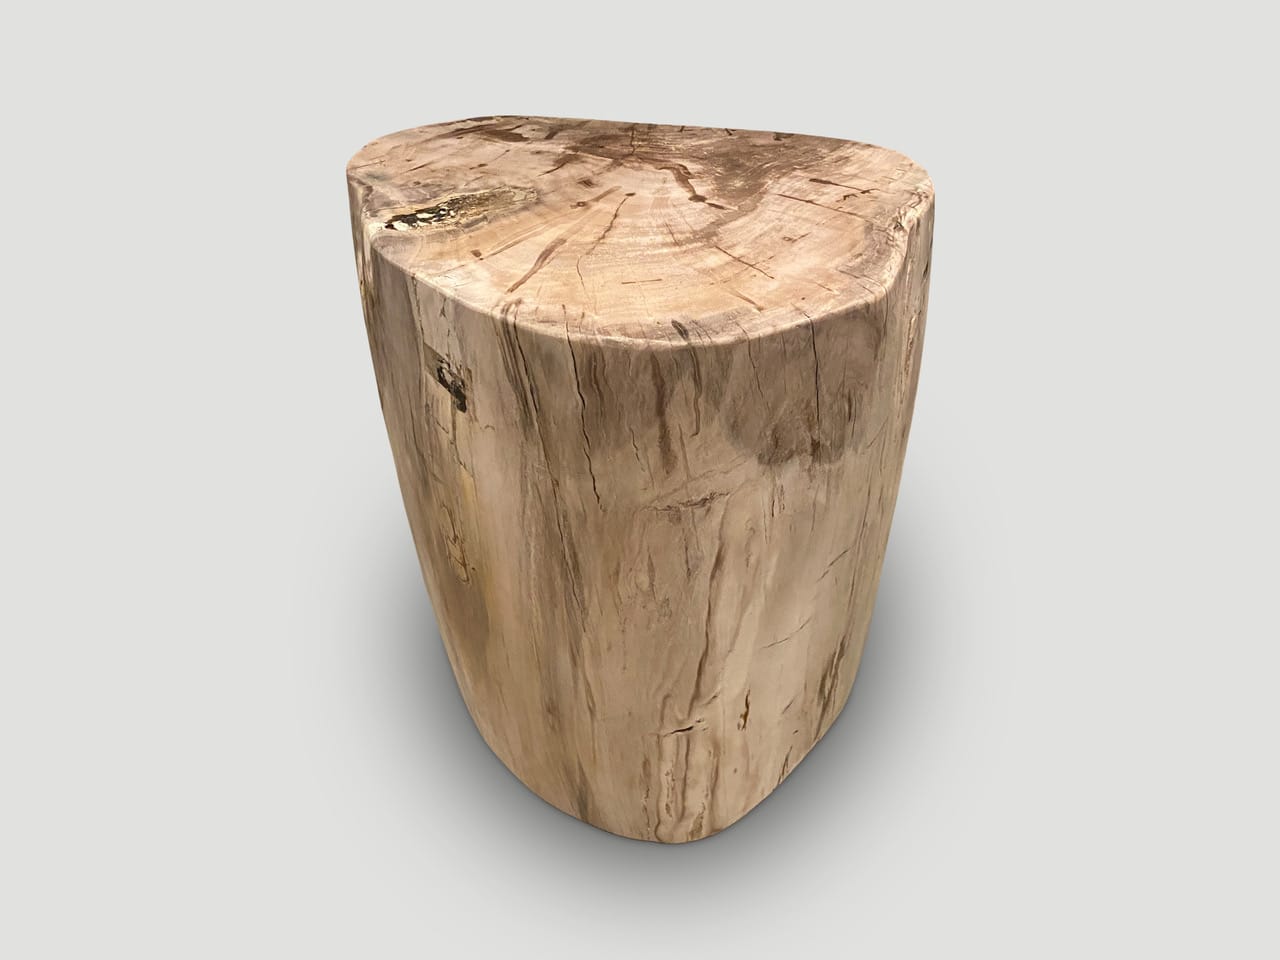 high quality petrified wood side table